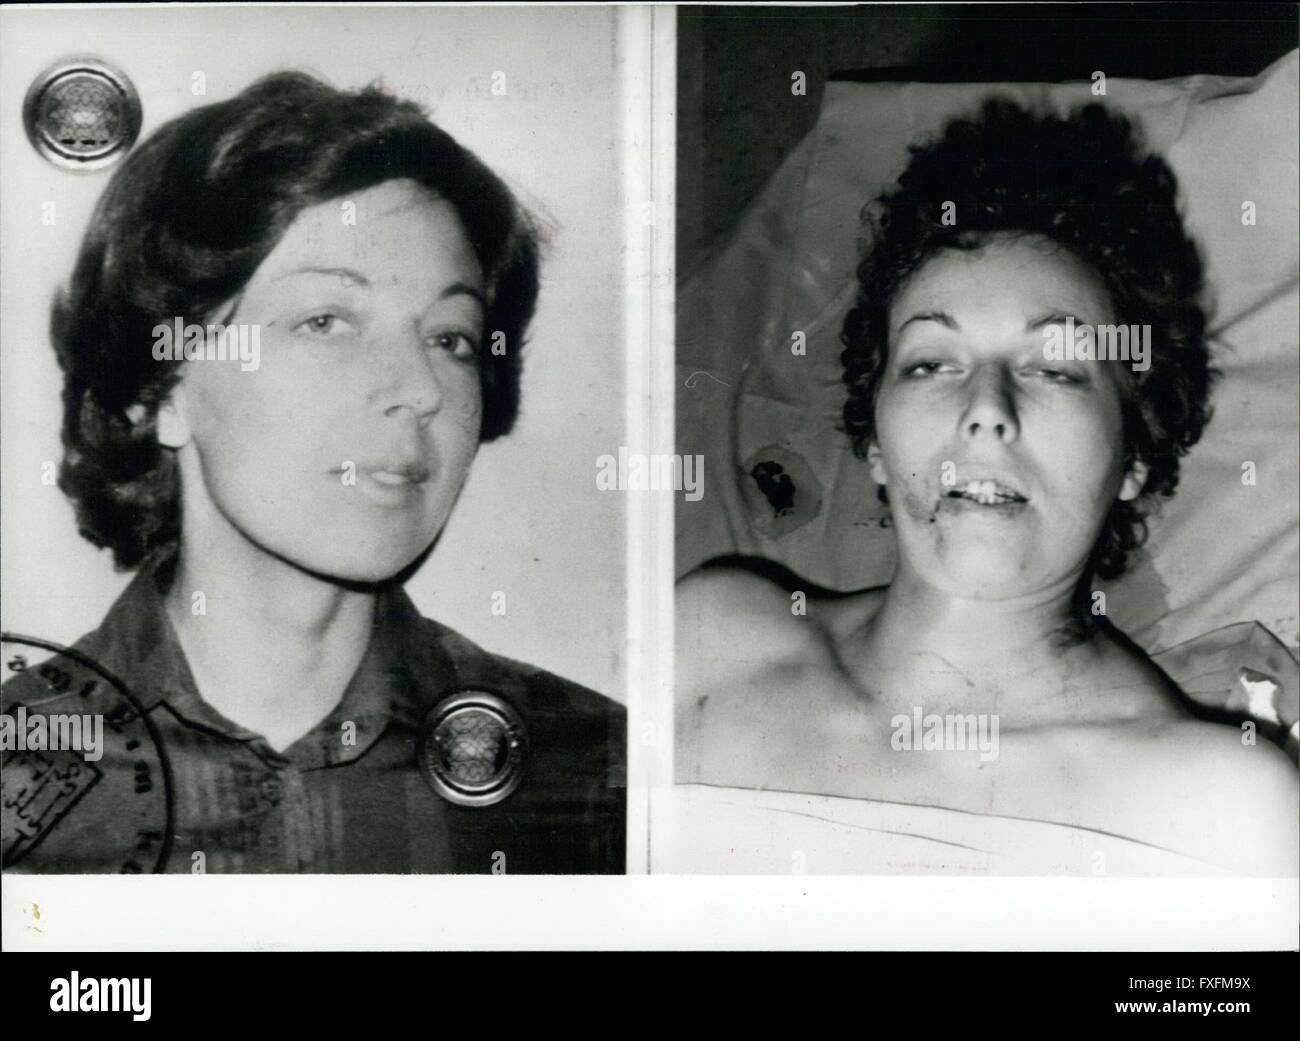 1977 - i supposti terroristici Elisabeth von Dyck morì in un Police-Action con un quick grip la polizia spera al venerdì 14 maggio per la cattura di sei dei più ricercati Occidentale-germania terroristi. A entrare nel suo appartamento al primo piano della casa a Norimberga/Occidentale-germania alcuni poliziotti di una truppa speciale di attendere il ritorno a casa Elisabeth von Dyck, che ha cercato di richiamare la sua 9 mm pistola e sparare su poliziotti. Due degli scatti, del terrorista-cacciatori hit Elisabeth von Dyck, uno di essi nella coscia, un altro nella colonna vertebrale. 80 minuti dopo il tiro di supposti terroristici morì in un clini Foto Stock